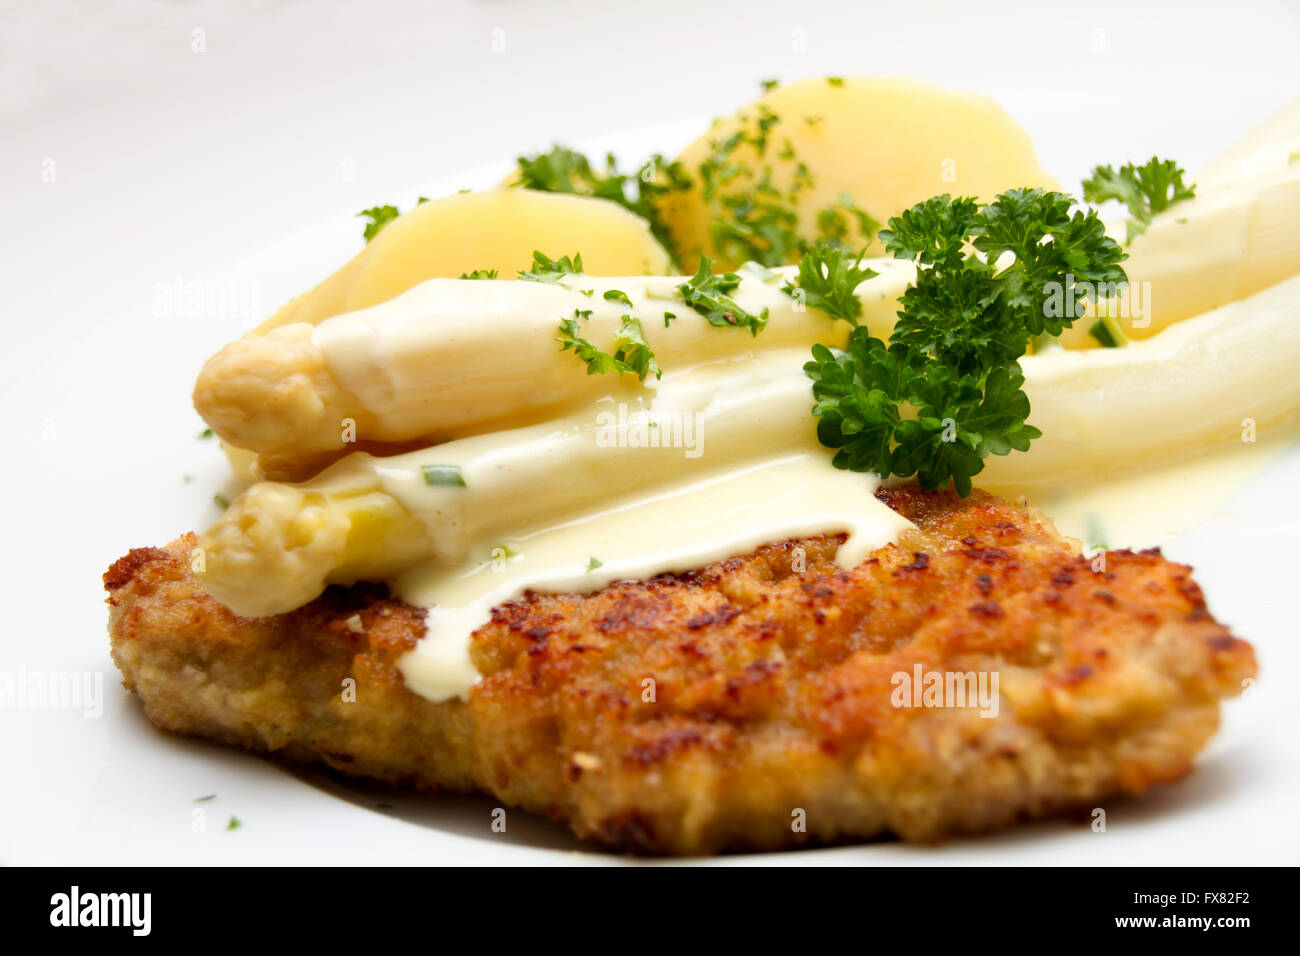 Spargel mit Schnitzel und Salzkartoffeln Stock Photo - Alamy